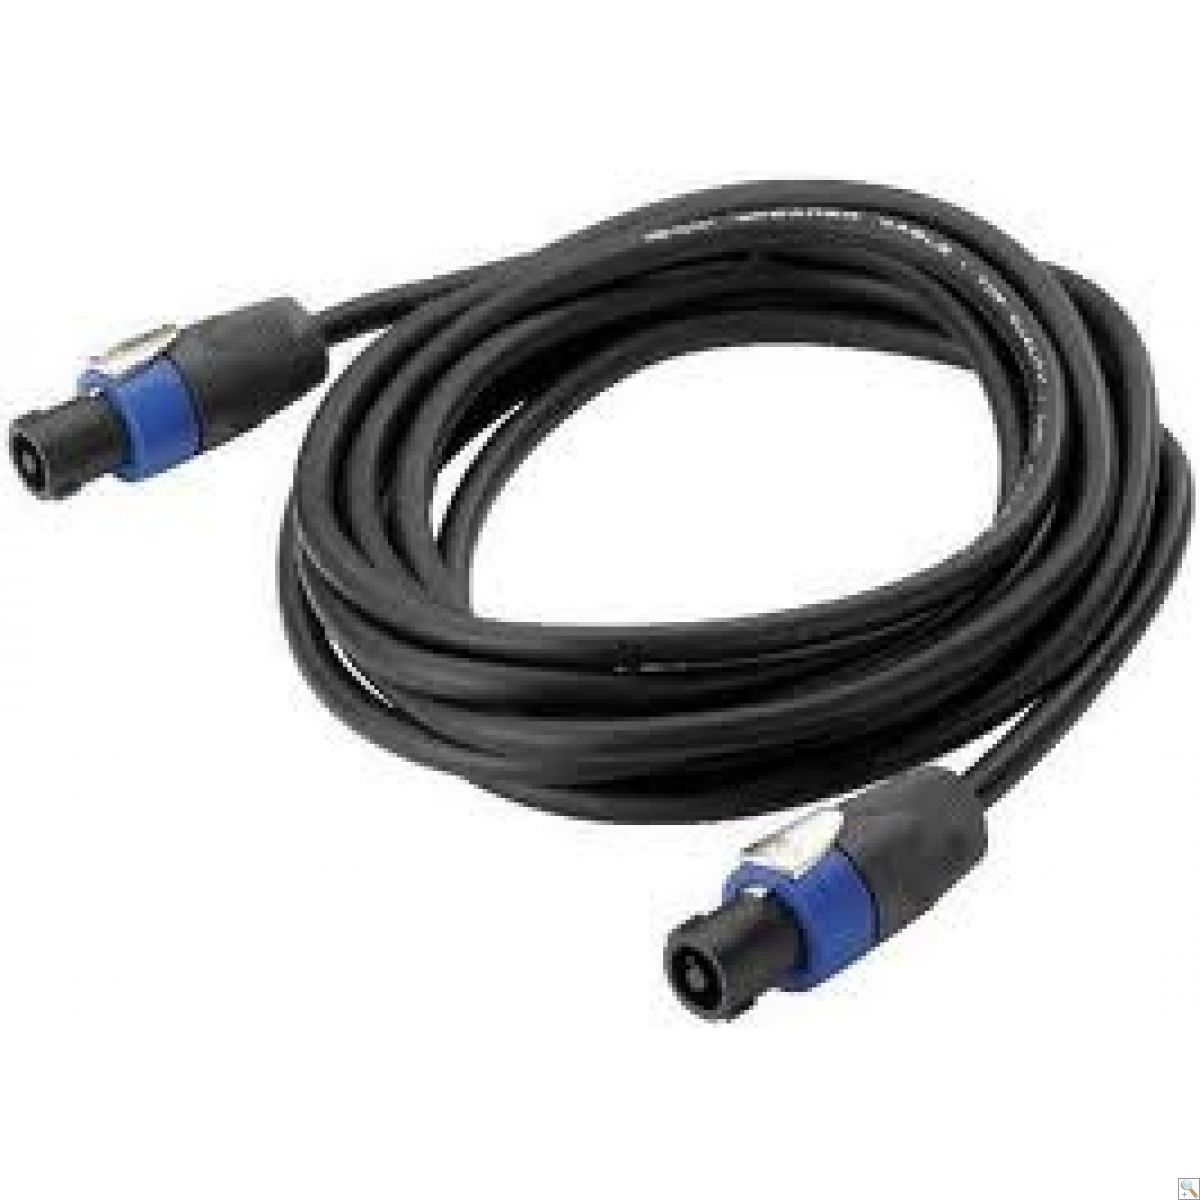 Speakon 2 pole plug to plug cables